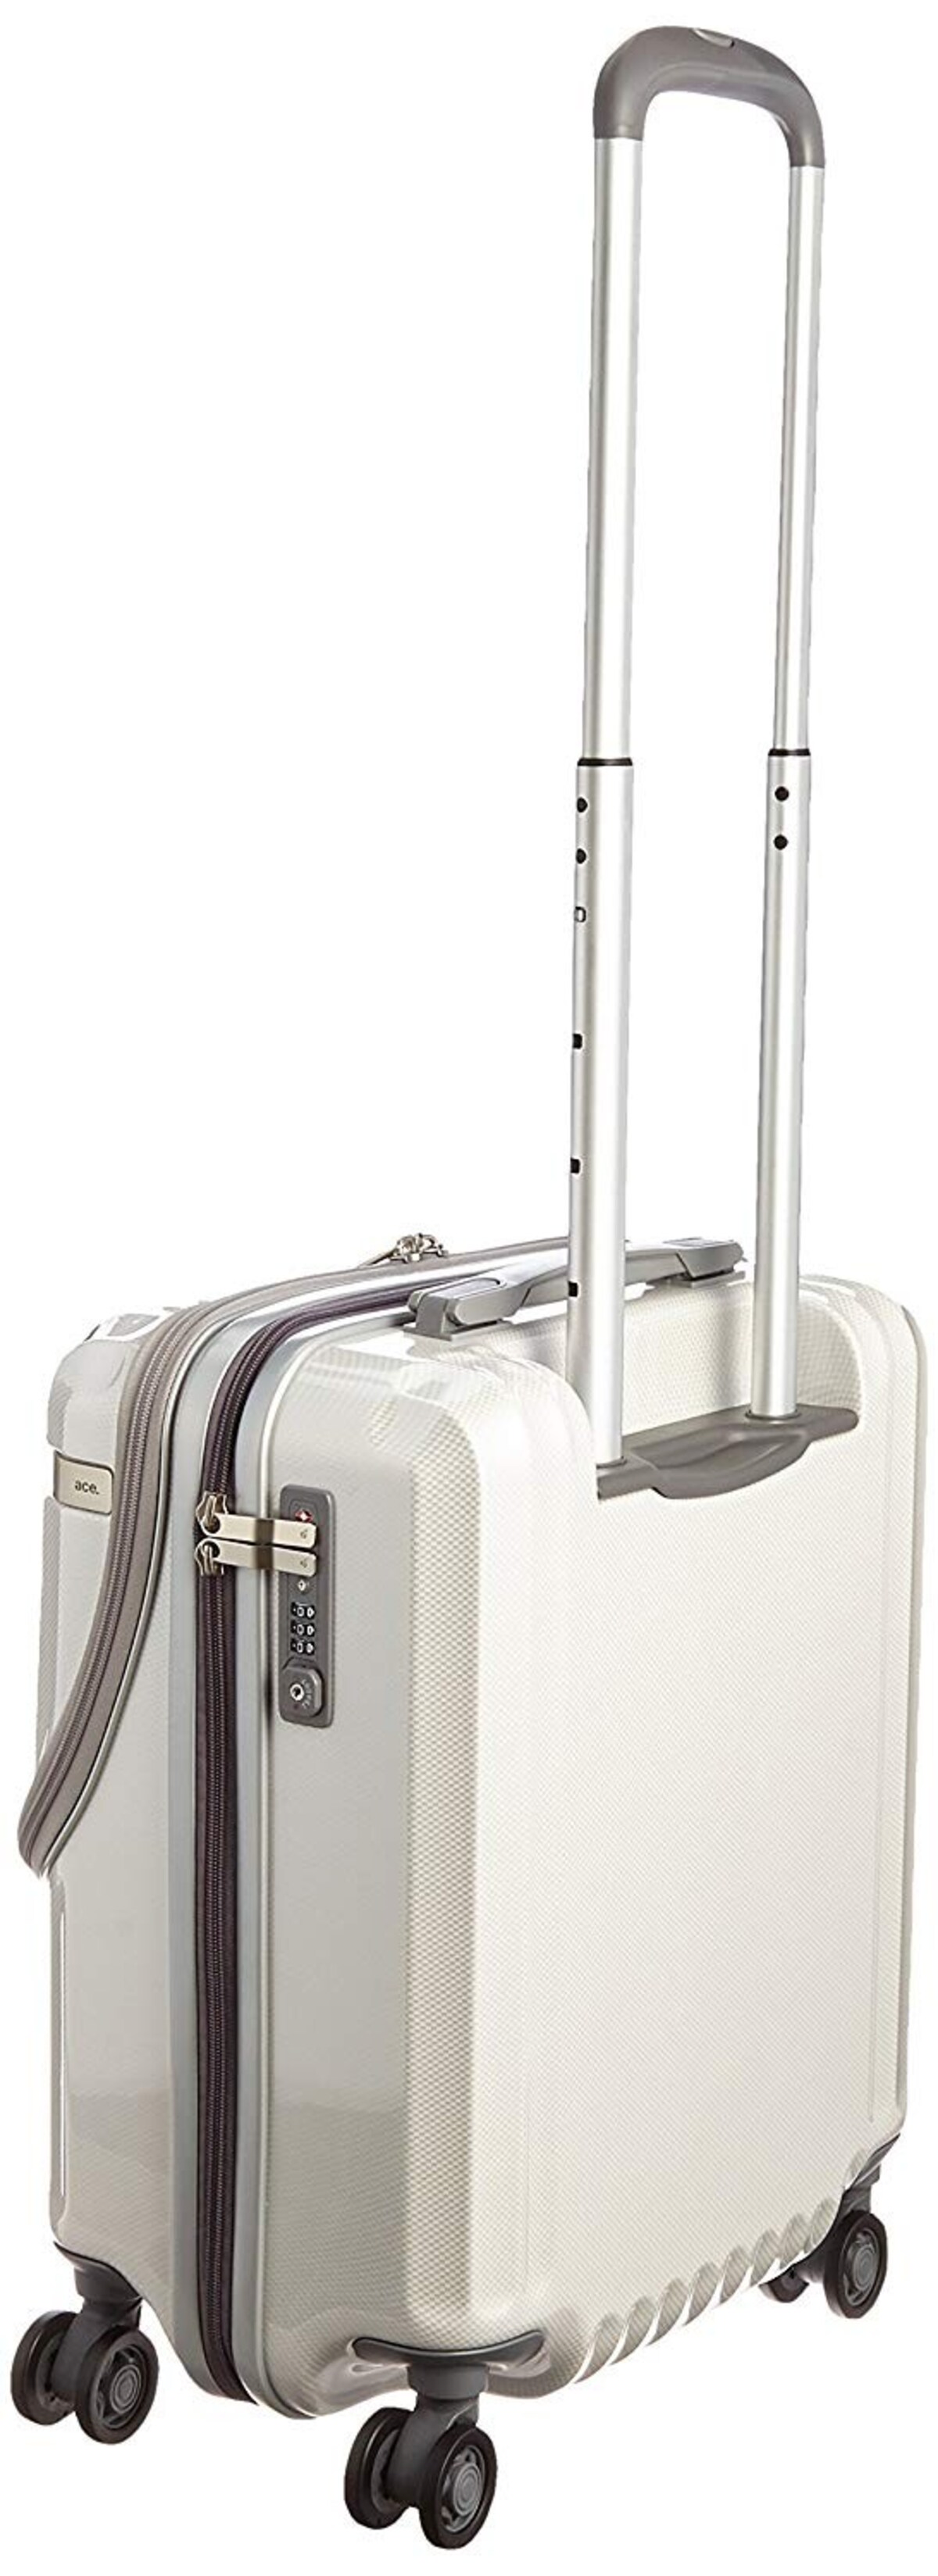  パリセイドZ スーツケース ホワイトカーボン画像2 